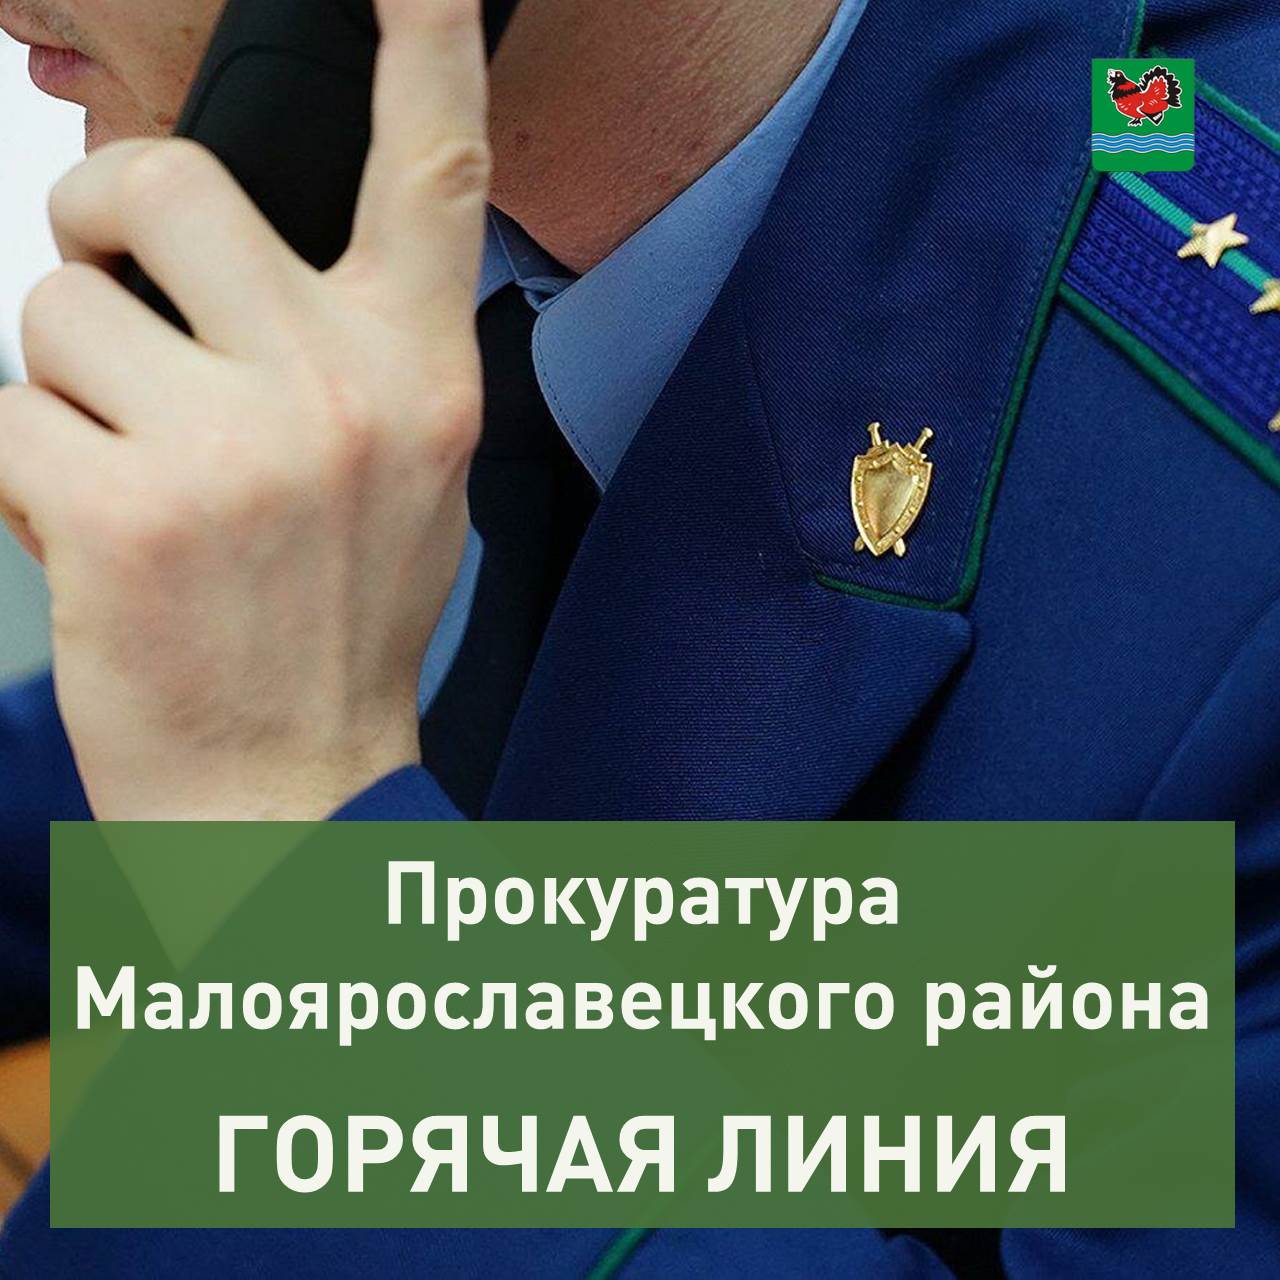 Прокуратура Малоярославецкого района проведёт с 15 по 20 мая горячую линию.